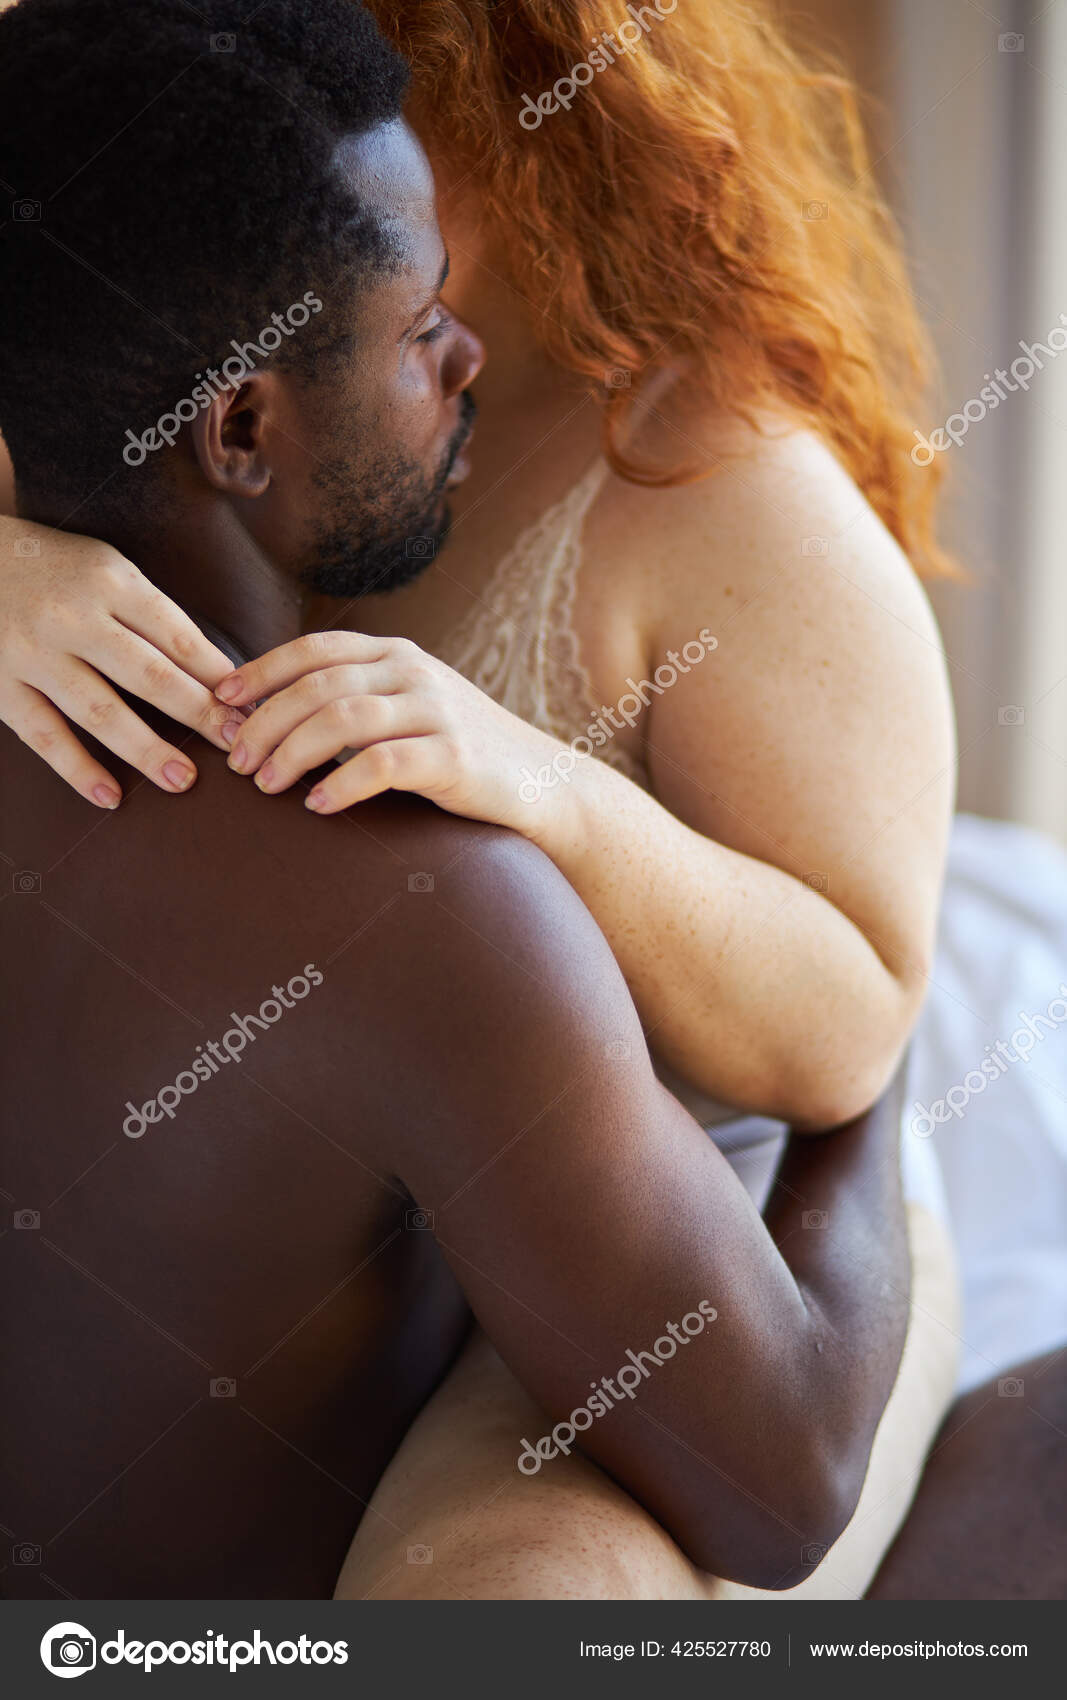 Passie tussen tedere interraciale diverse man en vrouw thuis ⬇ Stockfoto, rechtenvrije foto door © romanchazov27 #425527780